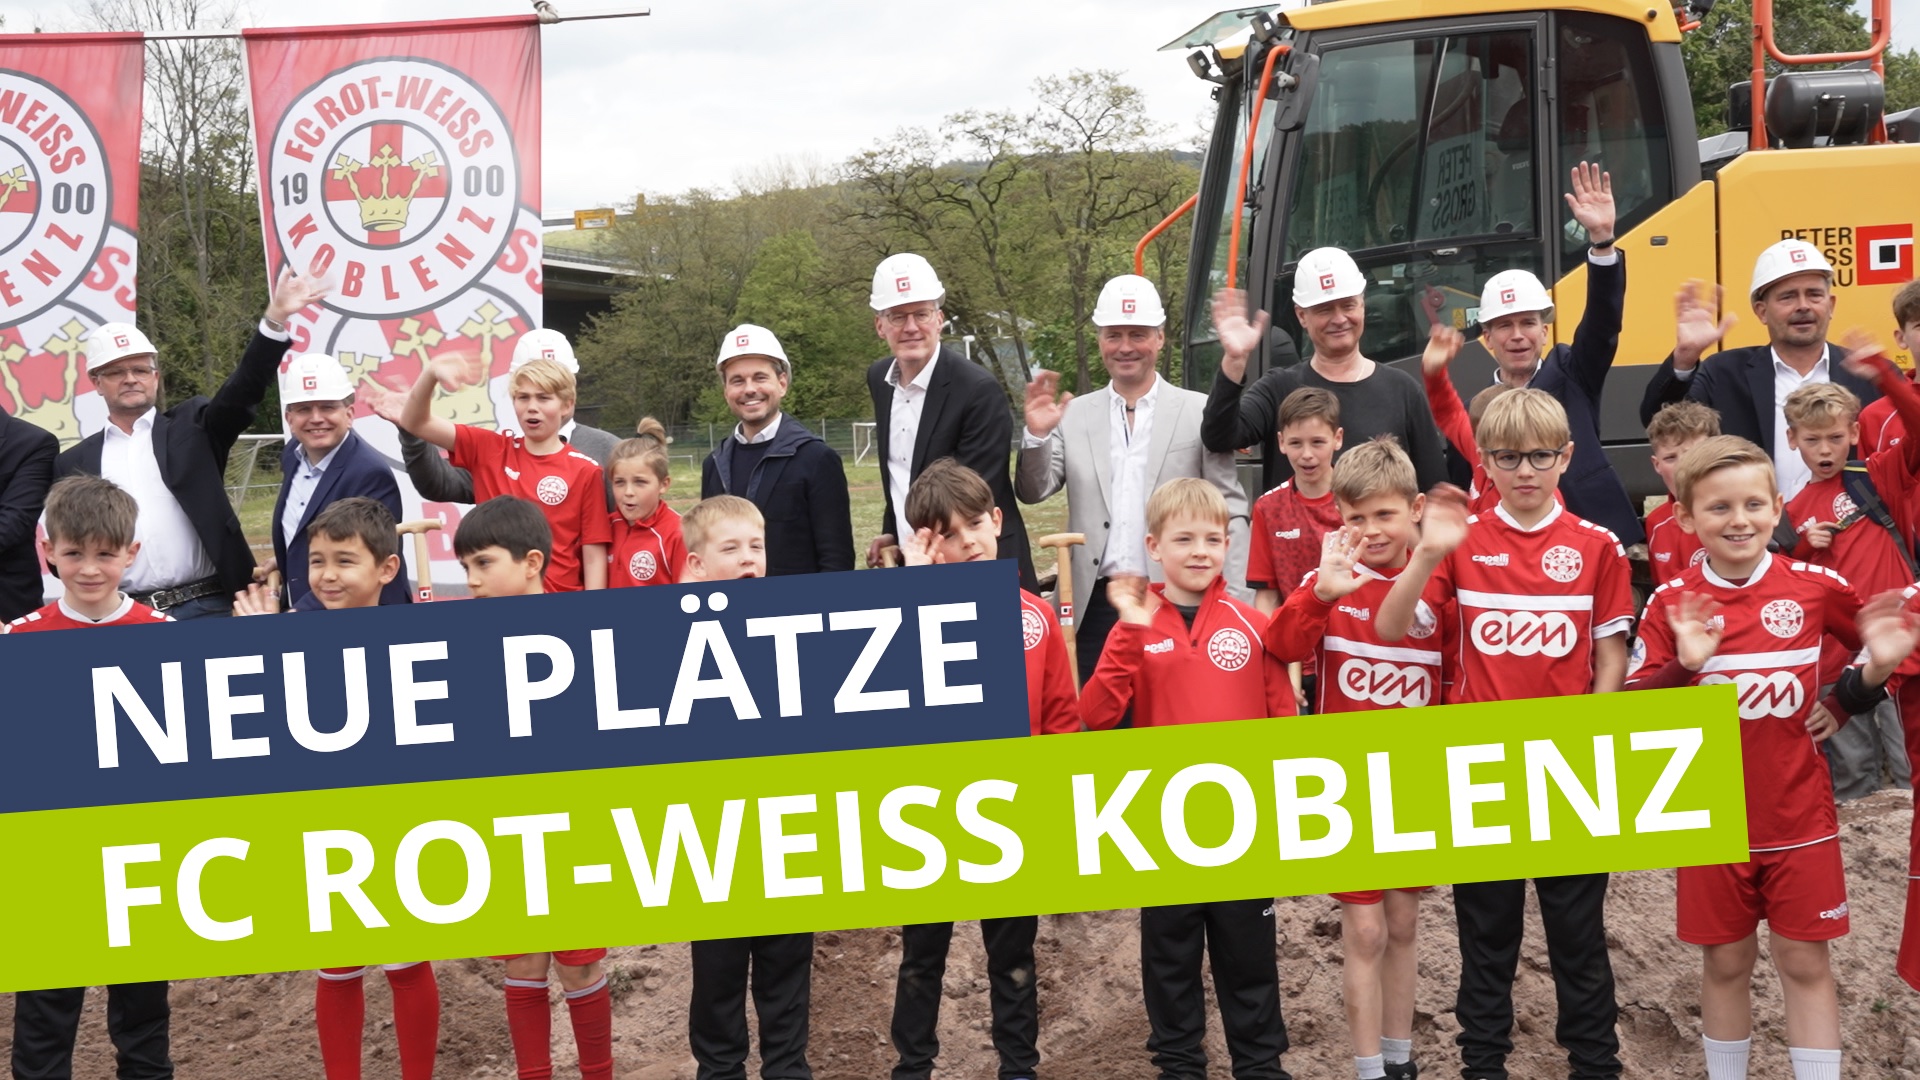 Campus Rot-Weiss: Baubeginn neuer Fußballplätze für den FC Rot-Weiß Koblenz